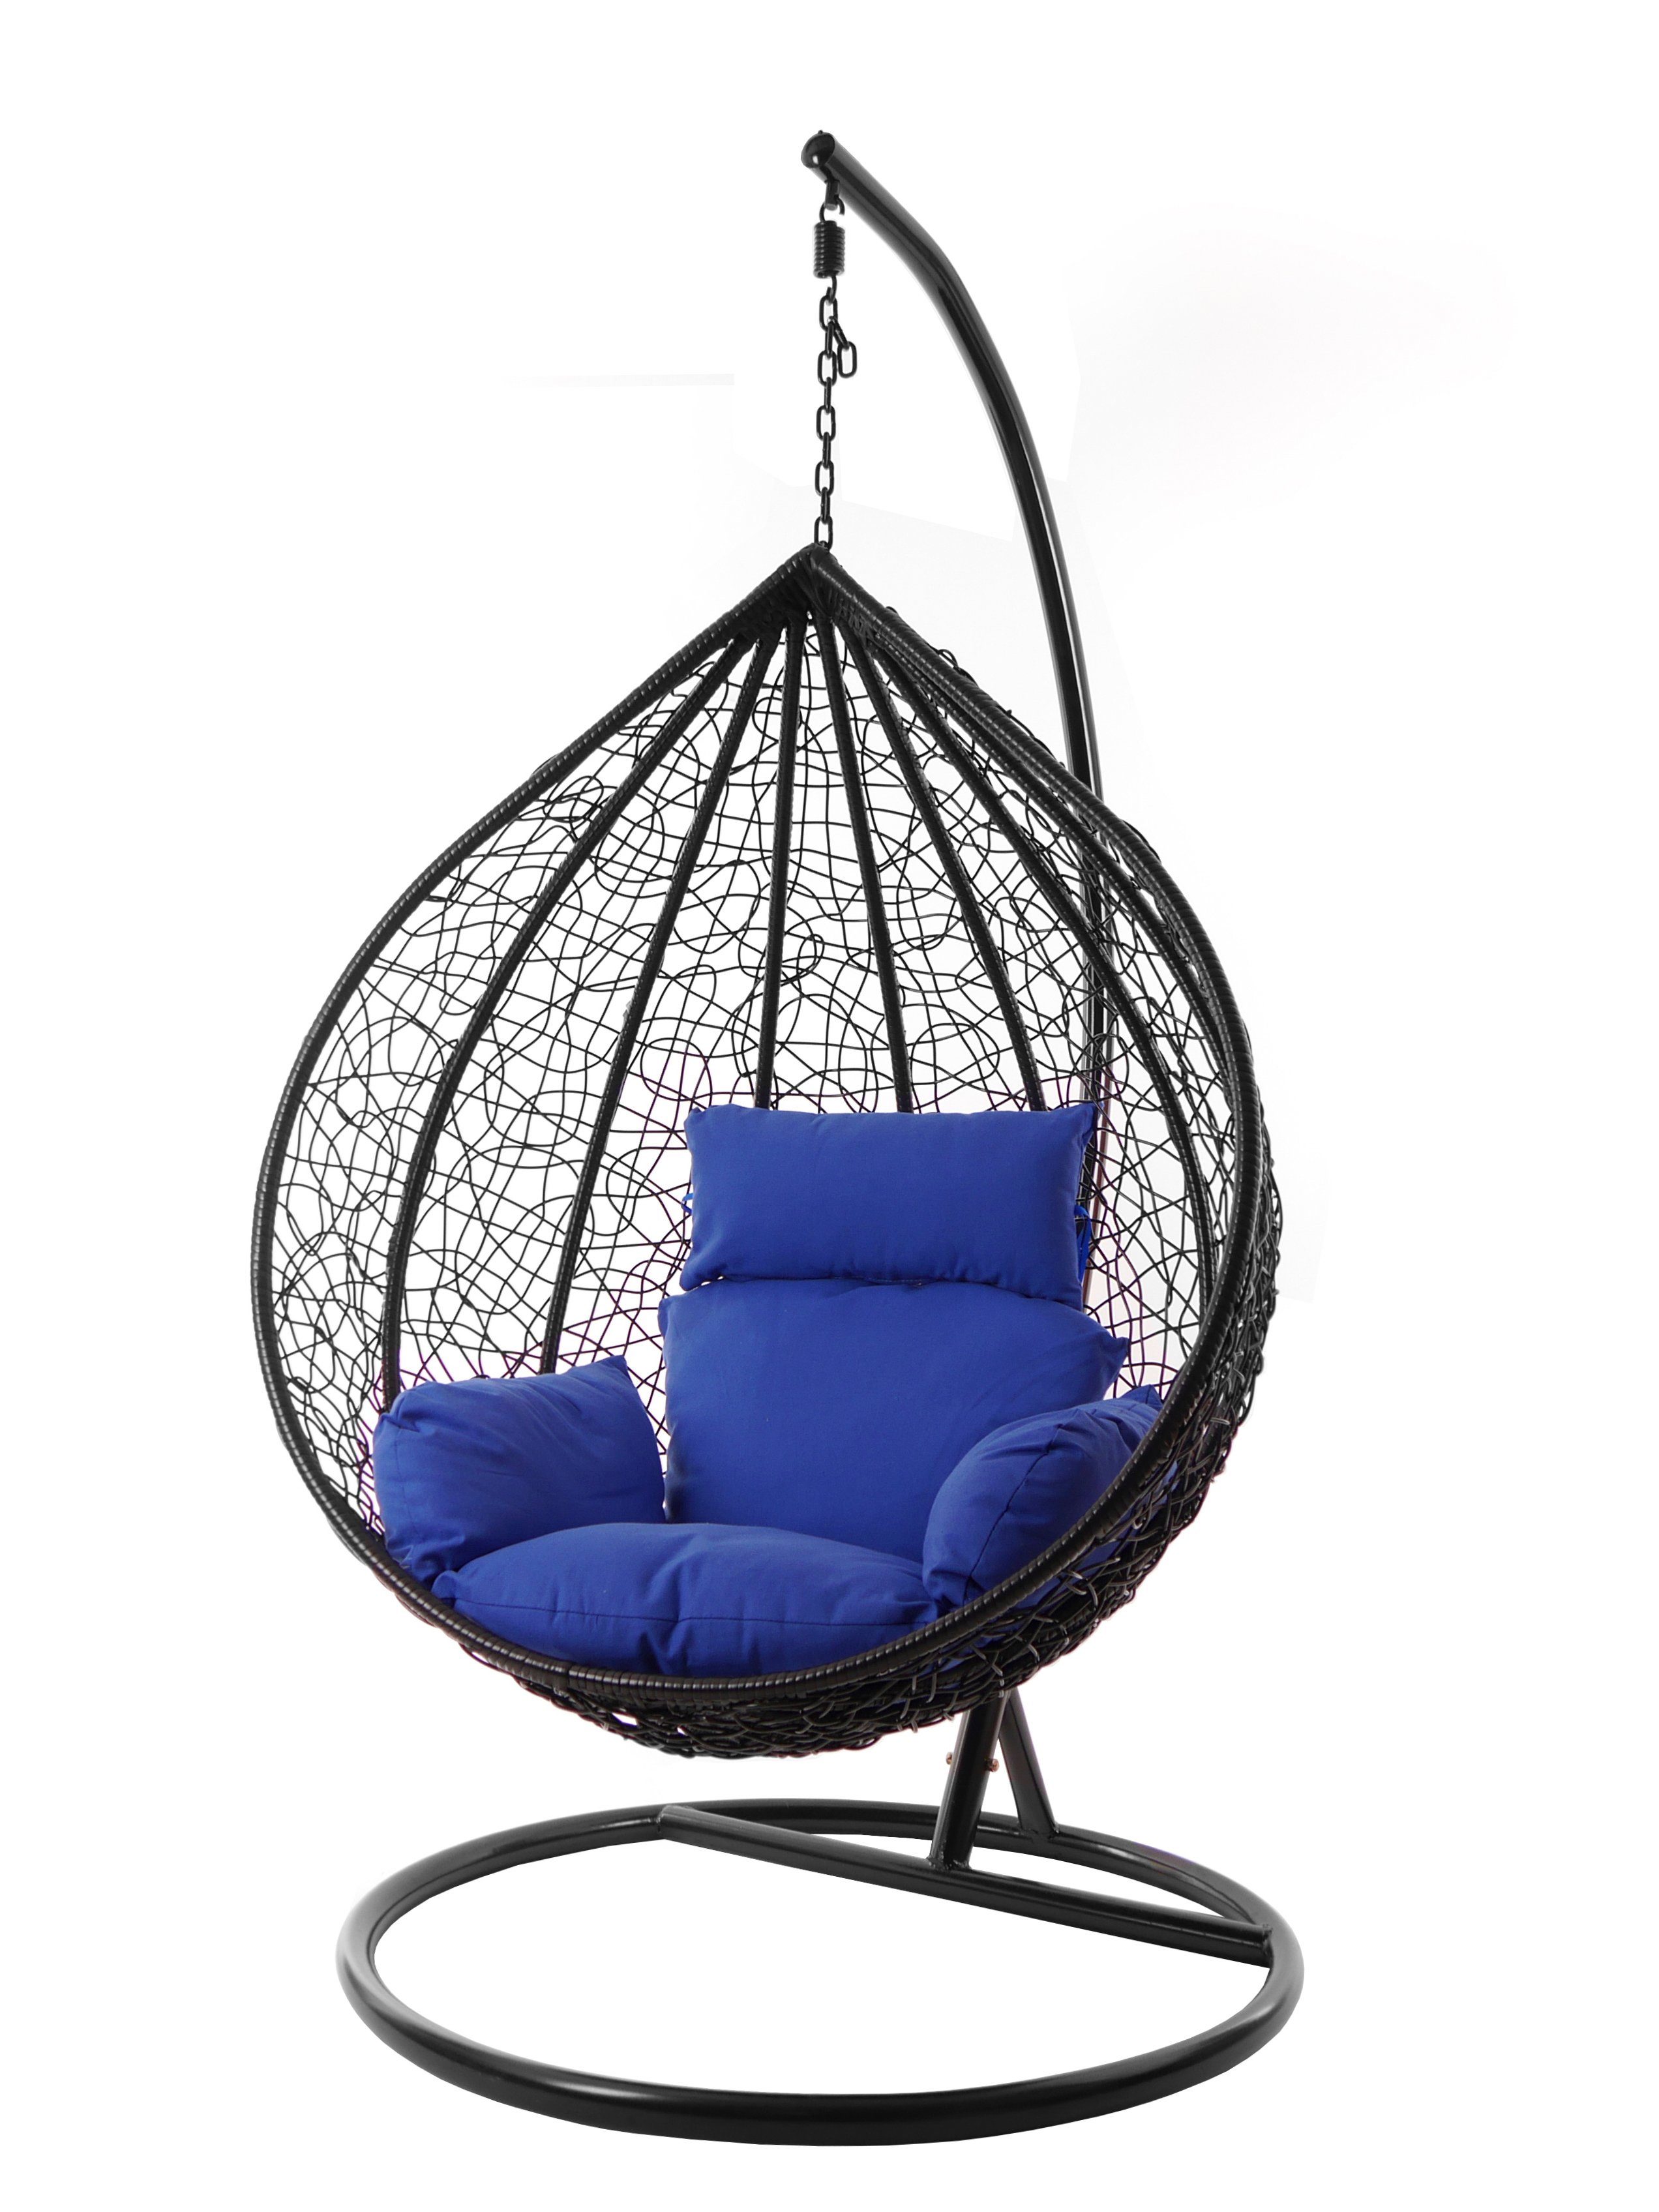 schwarz, KIDEO Hängesessel Chair, edel, verschiedene (5900 Hängesessel Kissen blau Swing Farben Gestell und Nest-Kissen, MANACOR admiral) XXL inklusive,